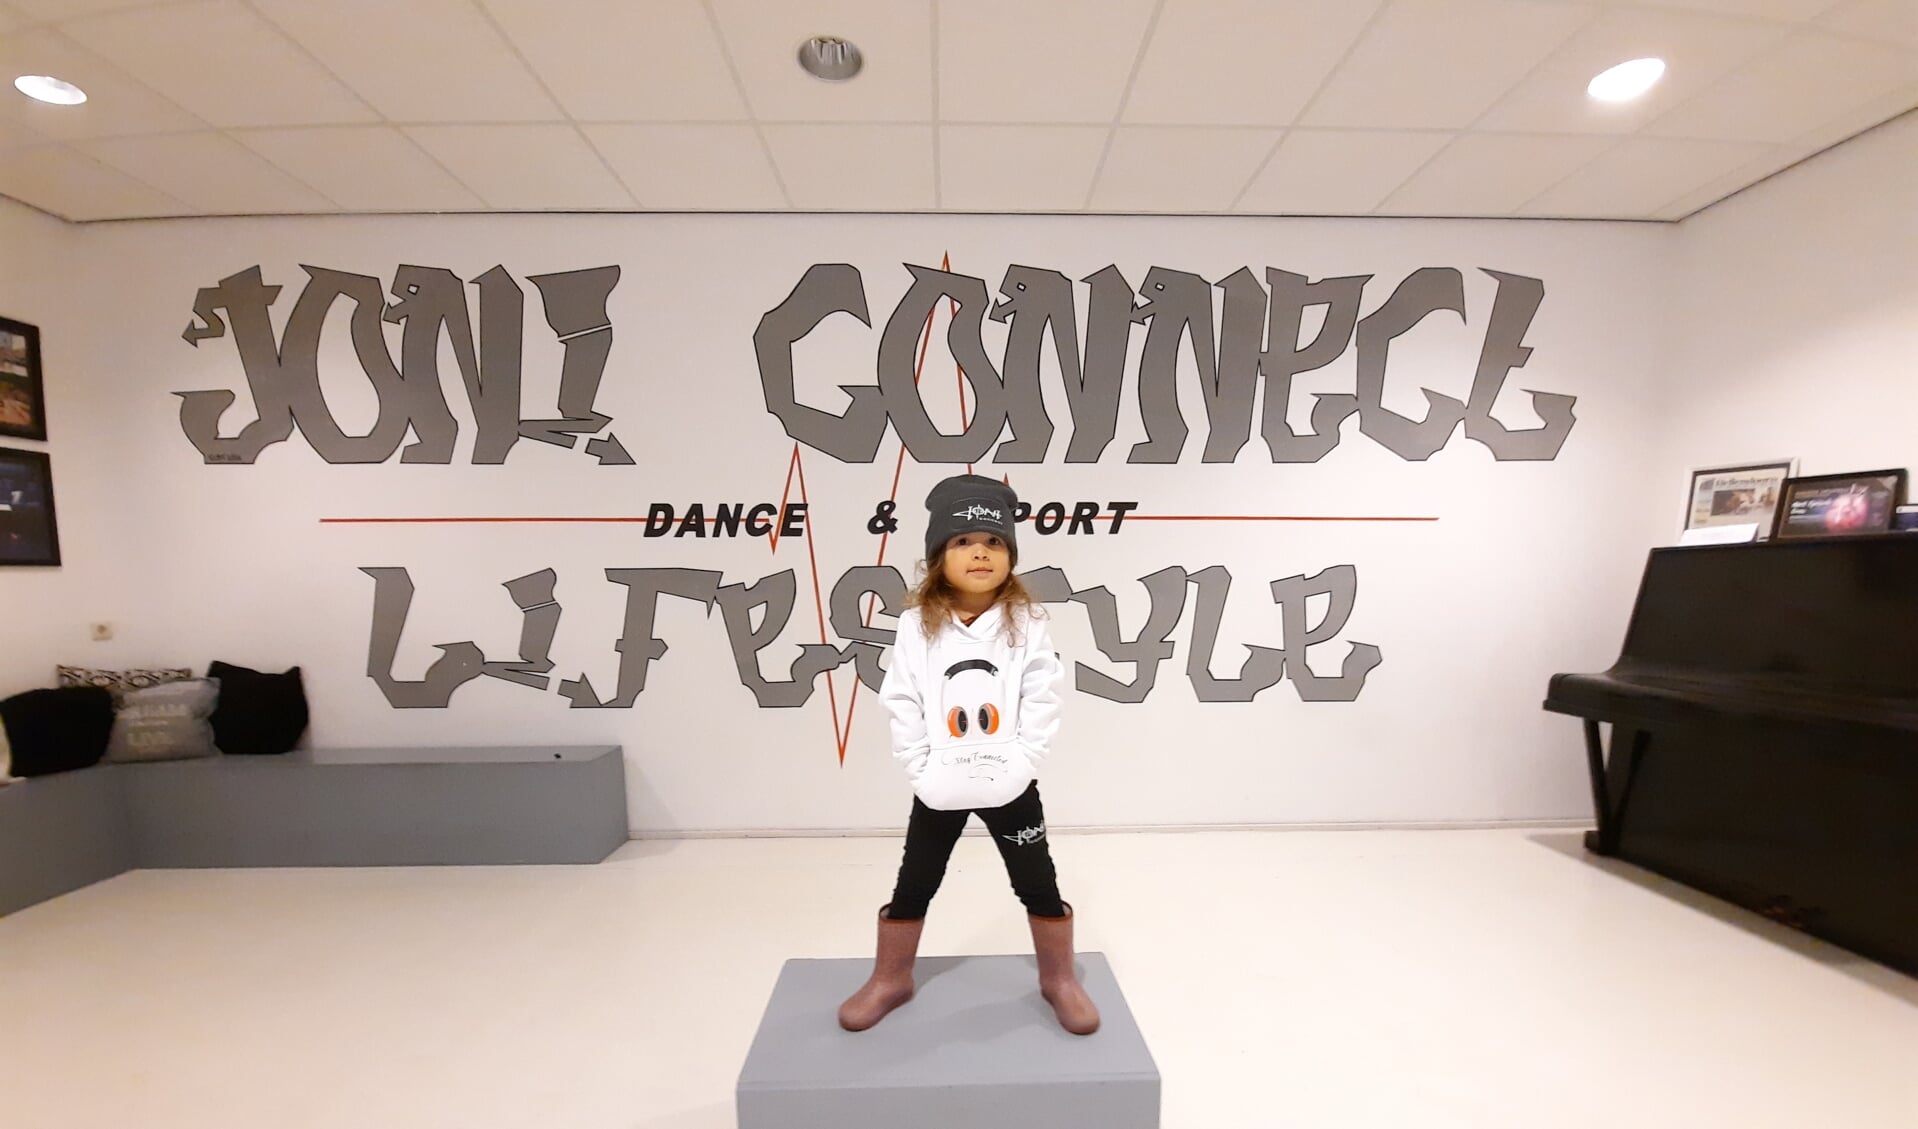 Joni Connect, de dans- en sportstudio van Joshua en Nicole, heeft naast de diverse lessen ook een eigen kledingwinkel. 